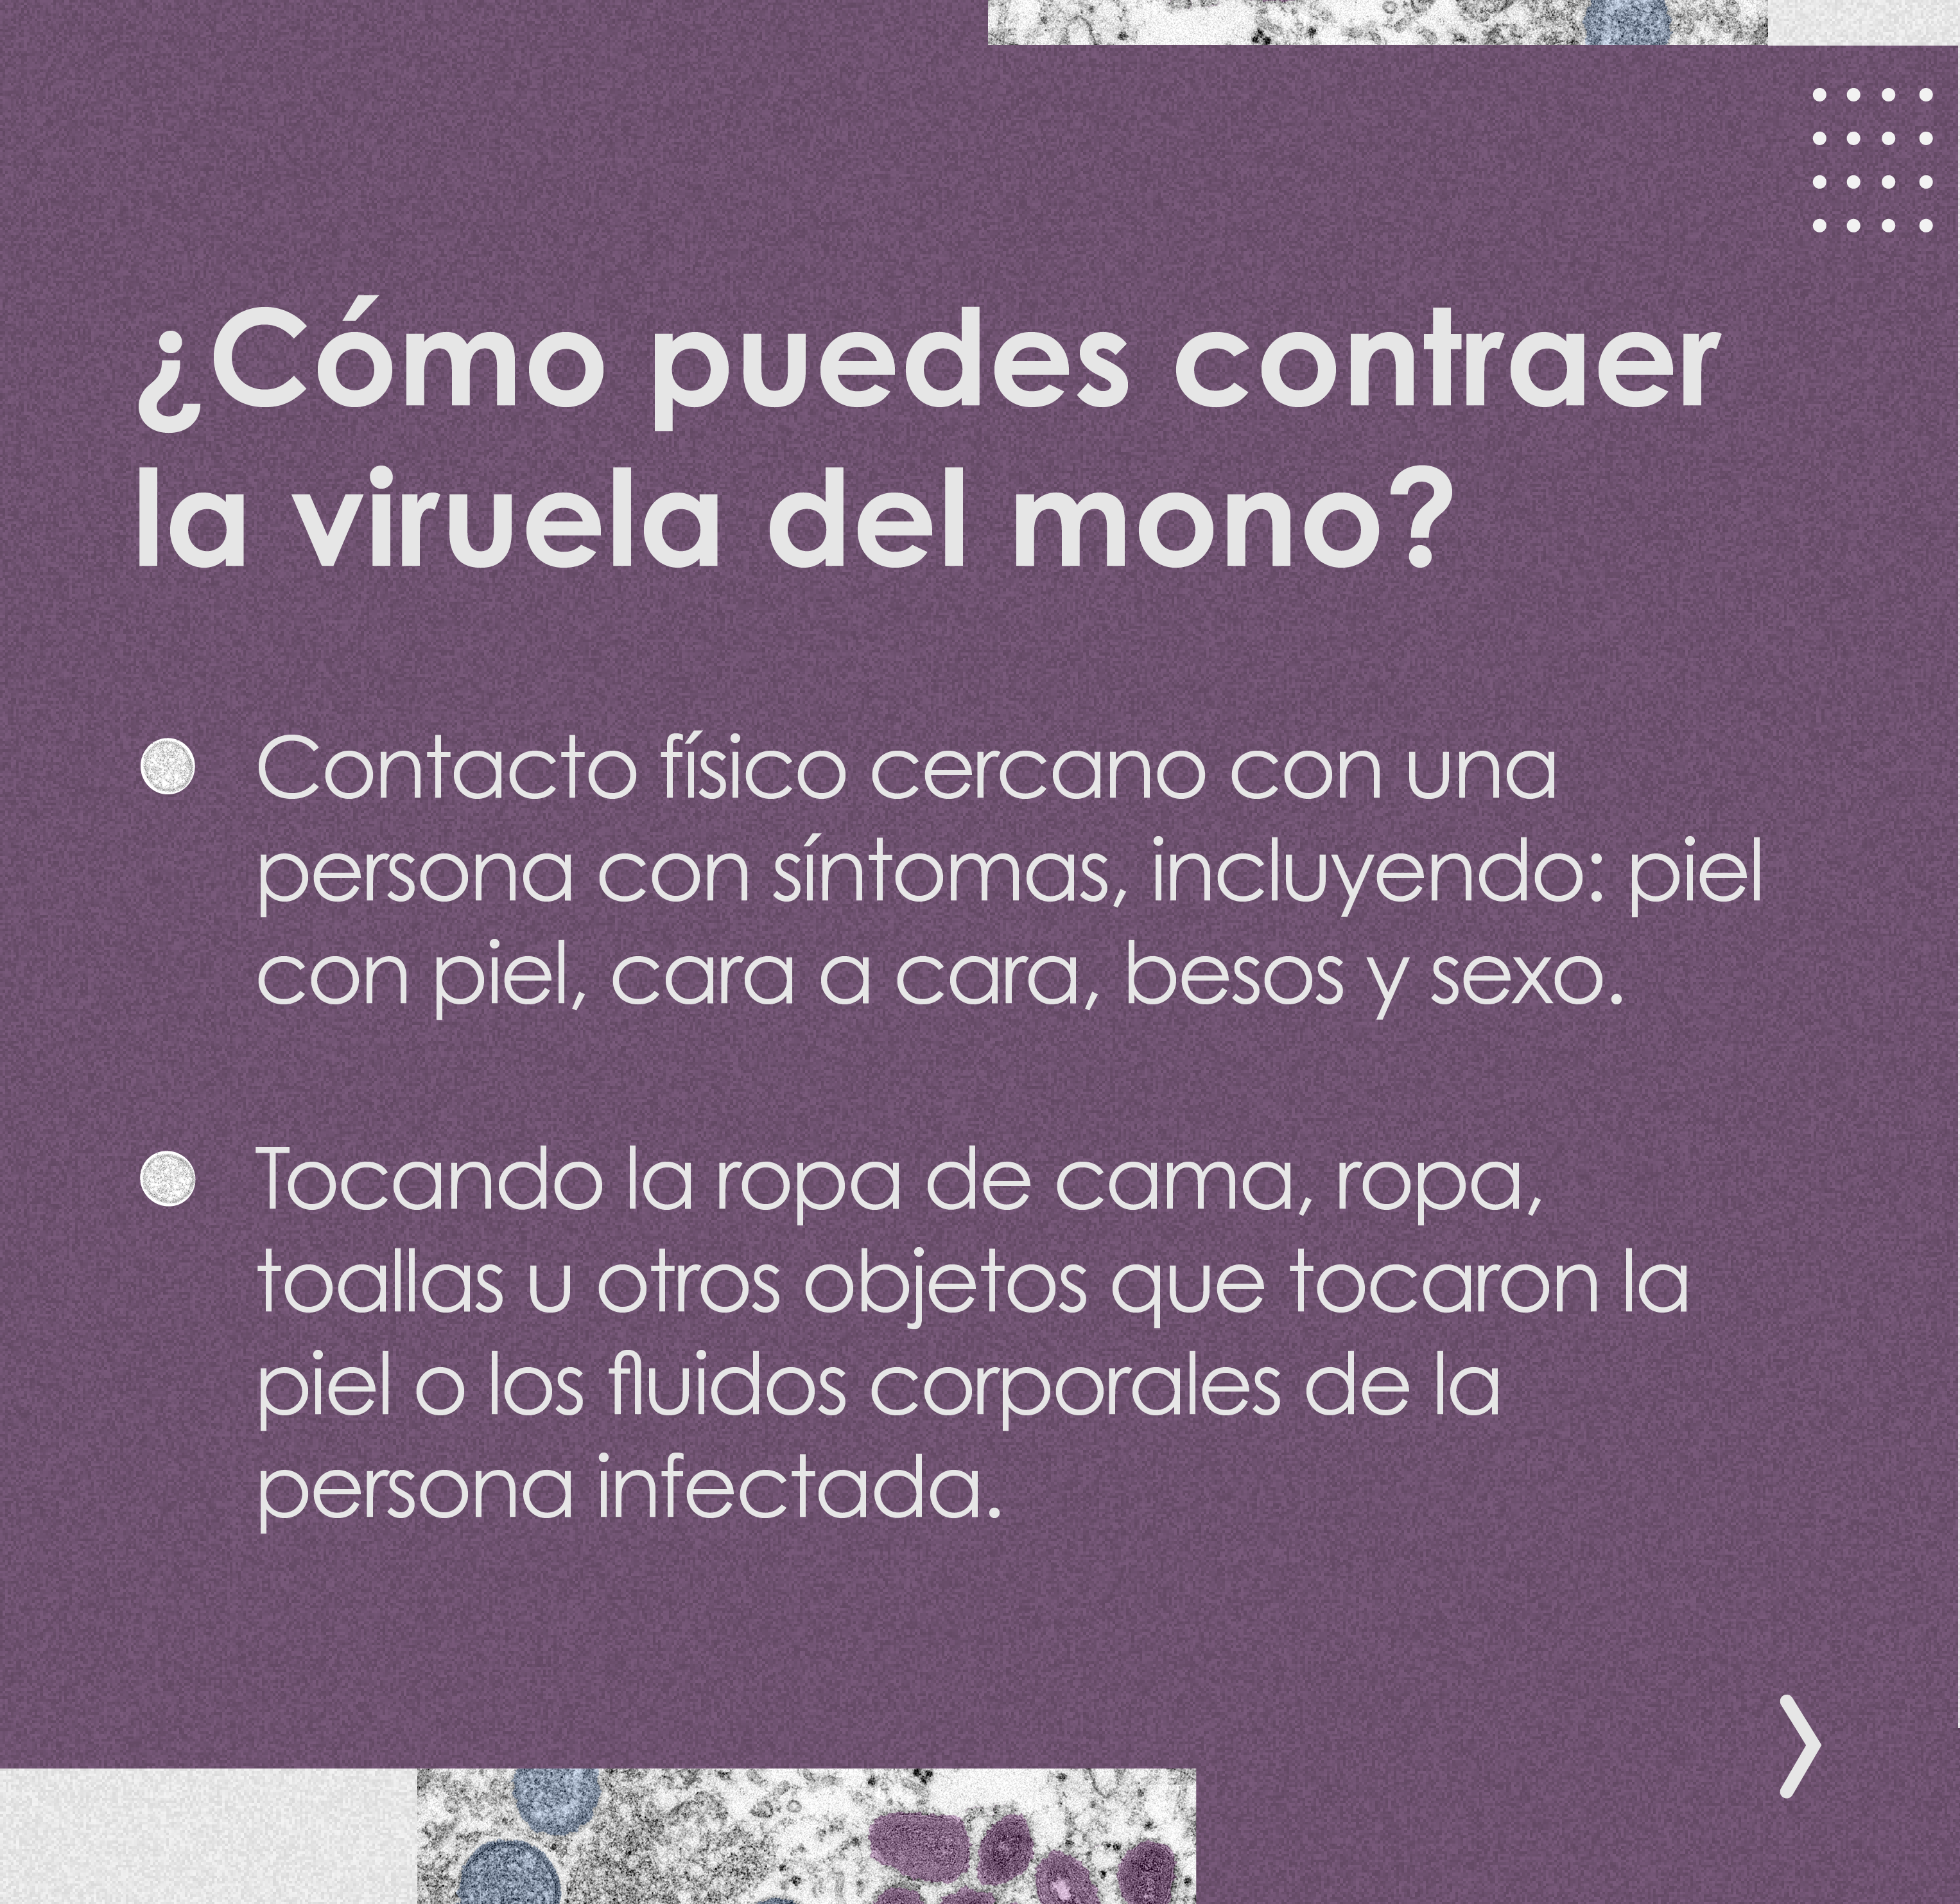 Signos/síntomas, transmisión y prevención de la viruela del mono